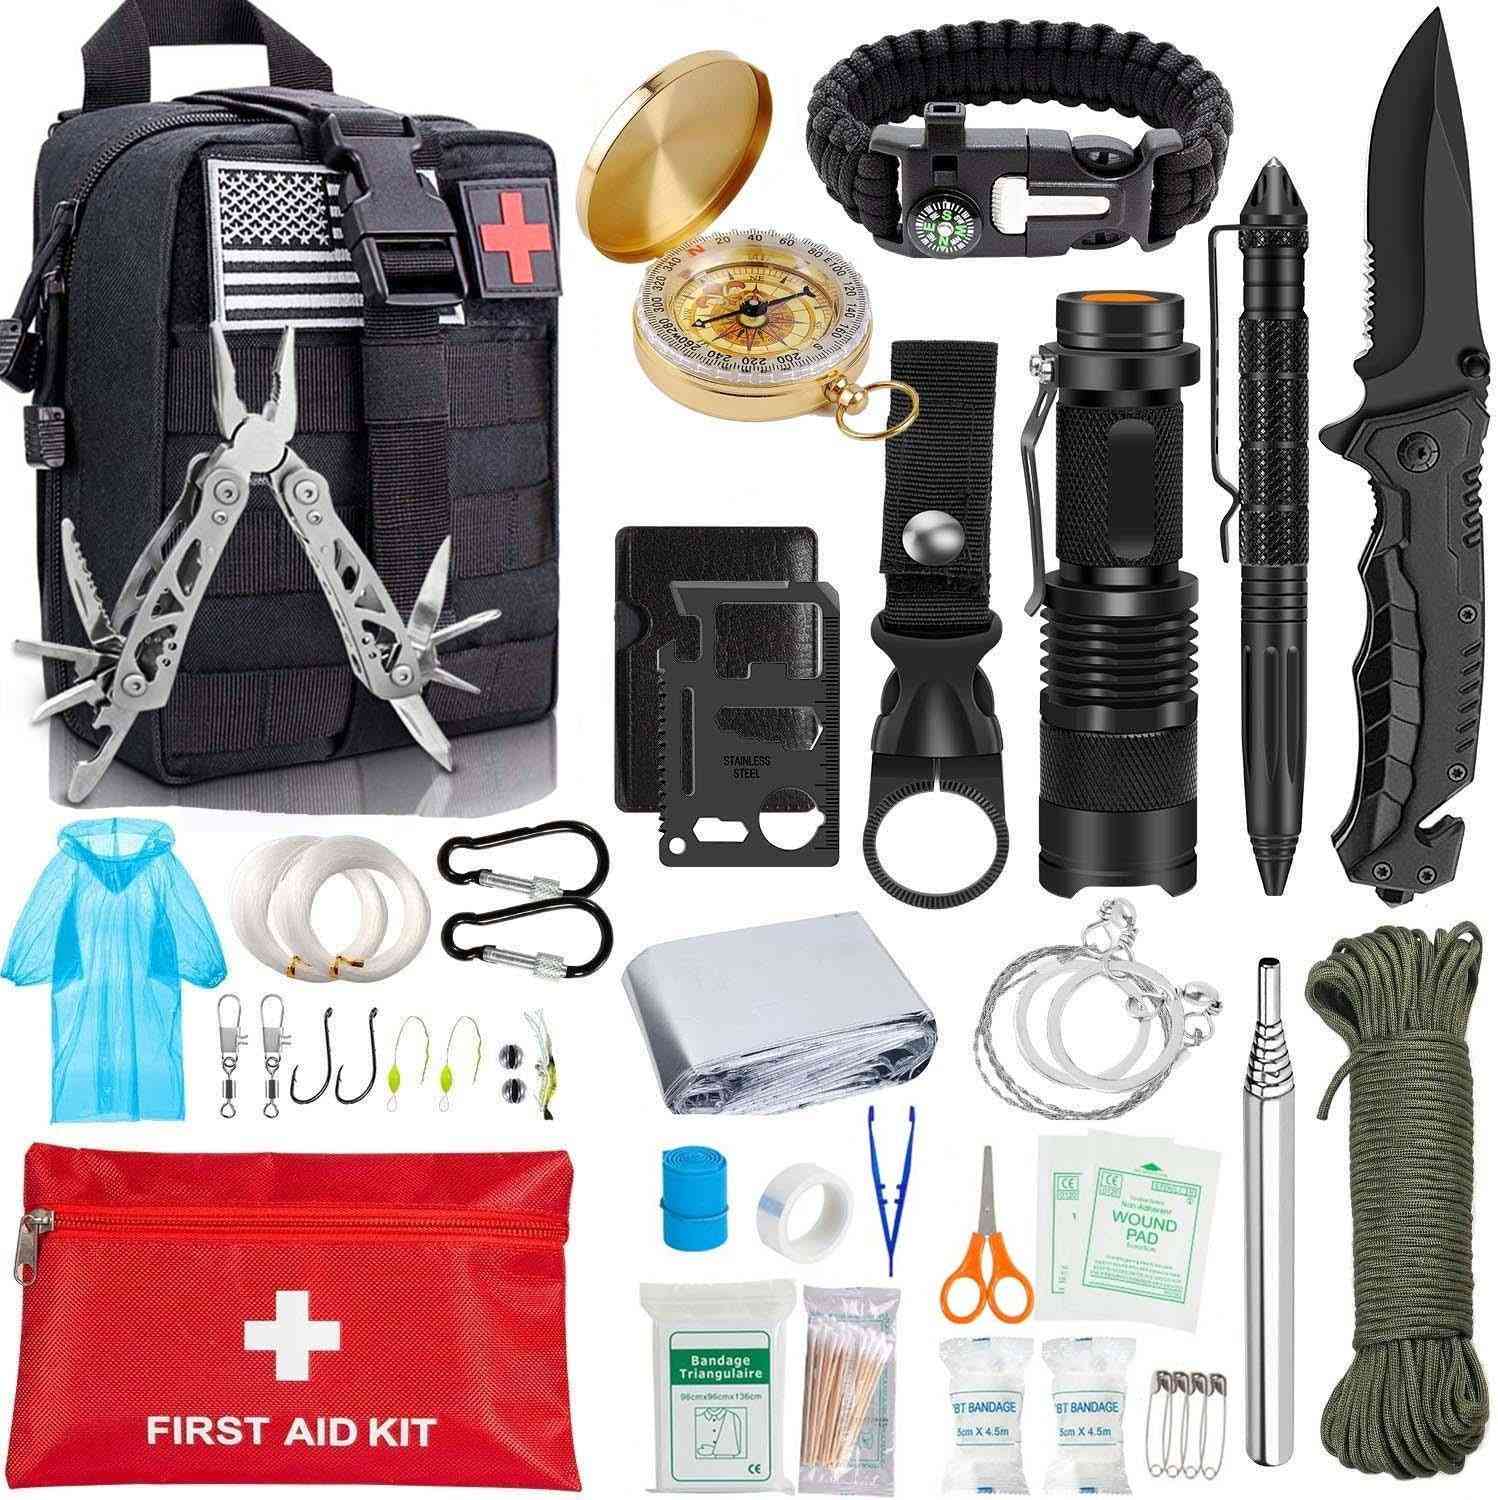 Edc survival, gear værktøjssæt - tæppe, taktisk pen, lommelygte, tænger, trådsav